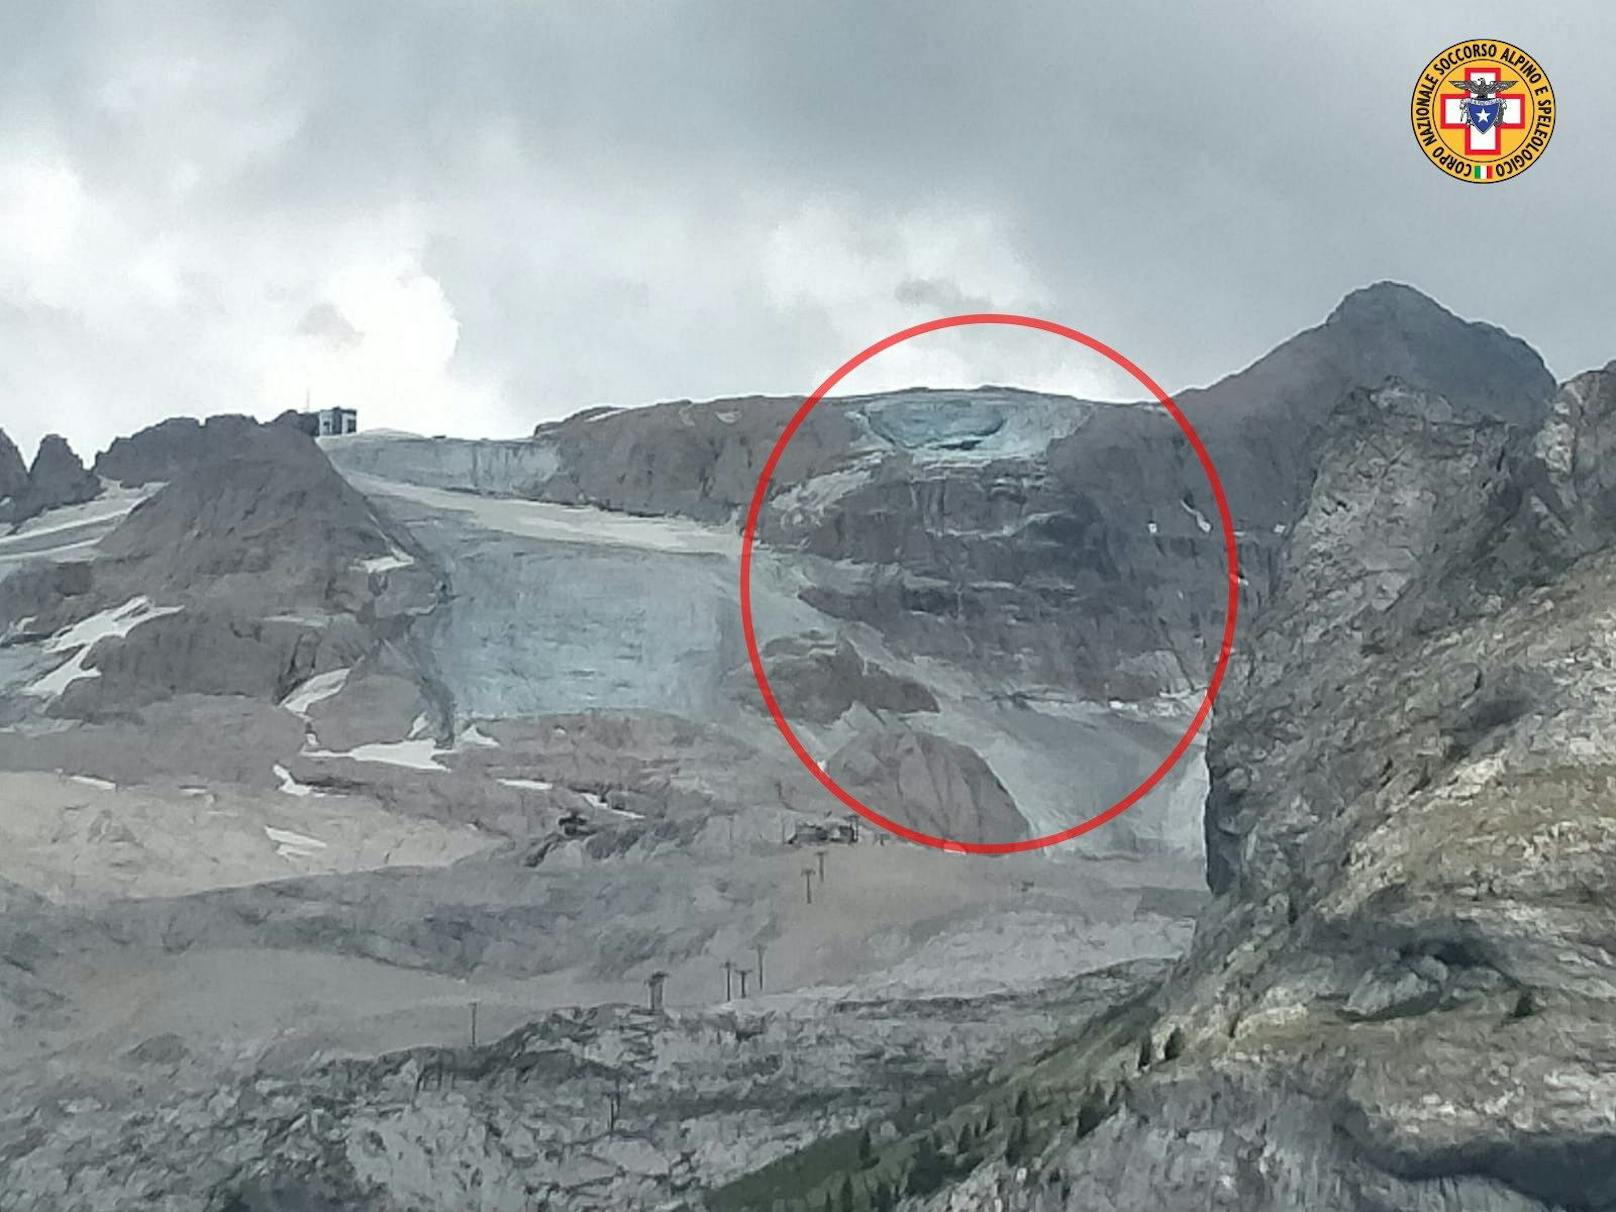 Vor dem Einbruch des Gletschers wurden am Samstag 10 Grad in den Dolomiten gemessen. Das ist ein Temperaturrekord.